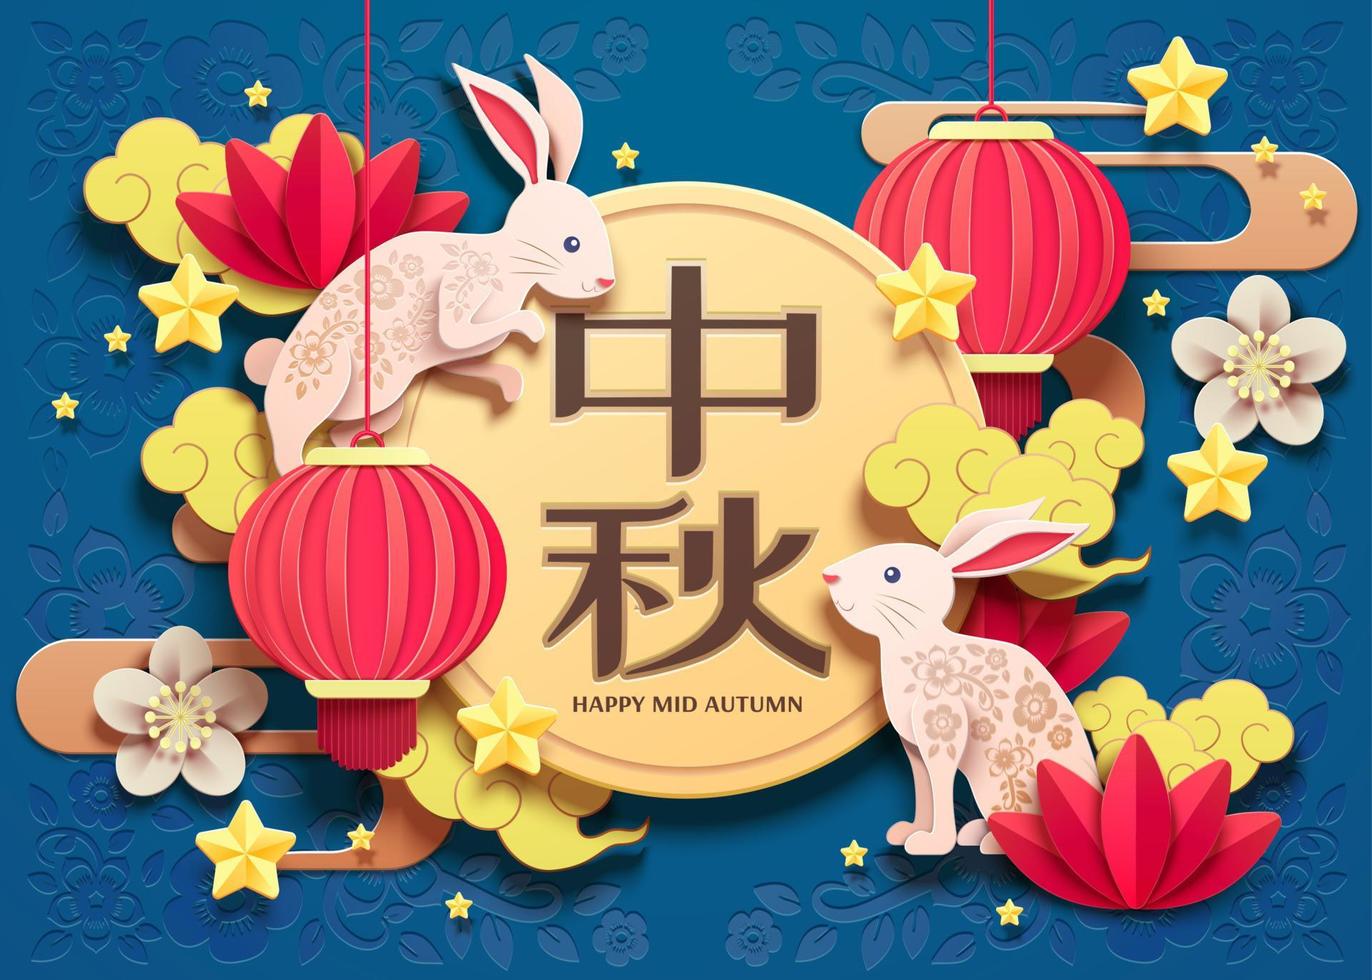 feliz festival de mediados de otoño diseño de arte en papel con conejo blanco y elementos de linternas sobre fondo azul, nombre de vacaciones escrito en palabras chinas vector